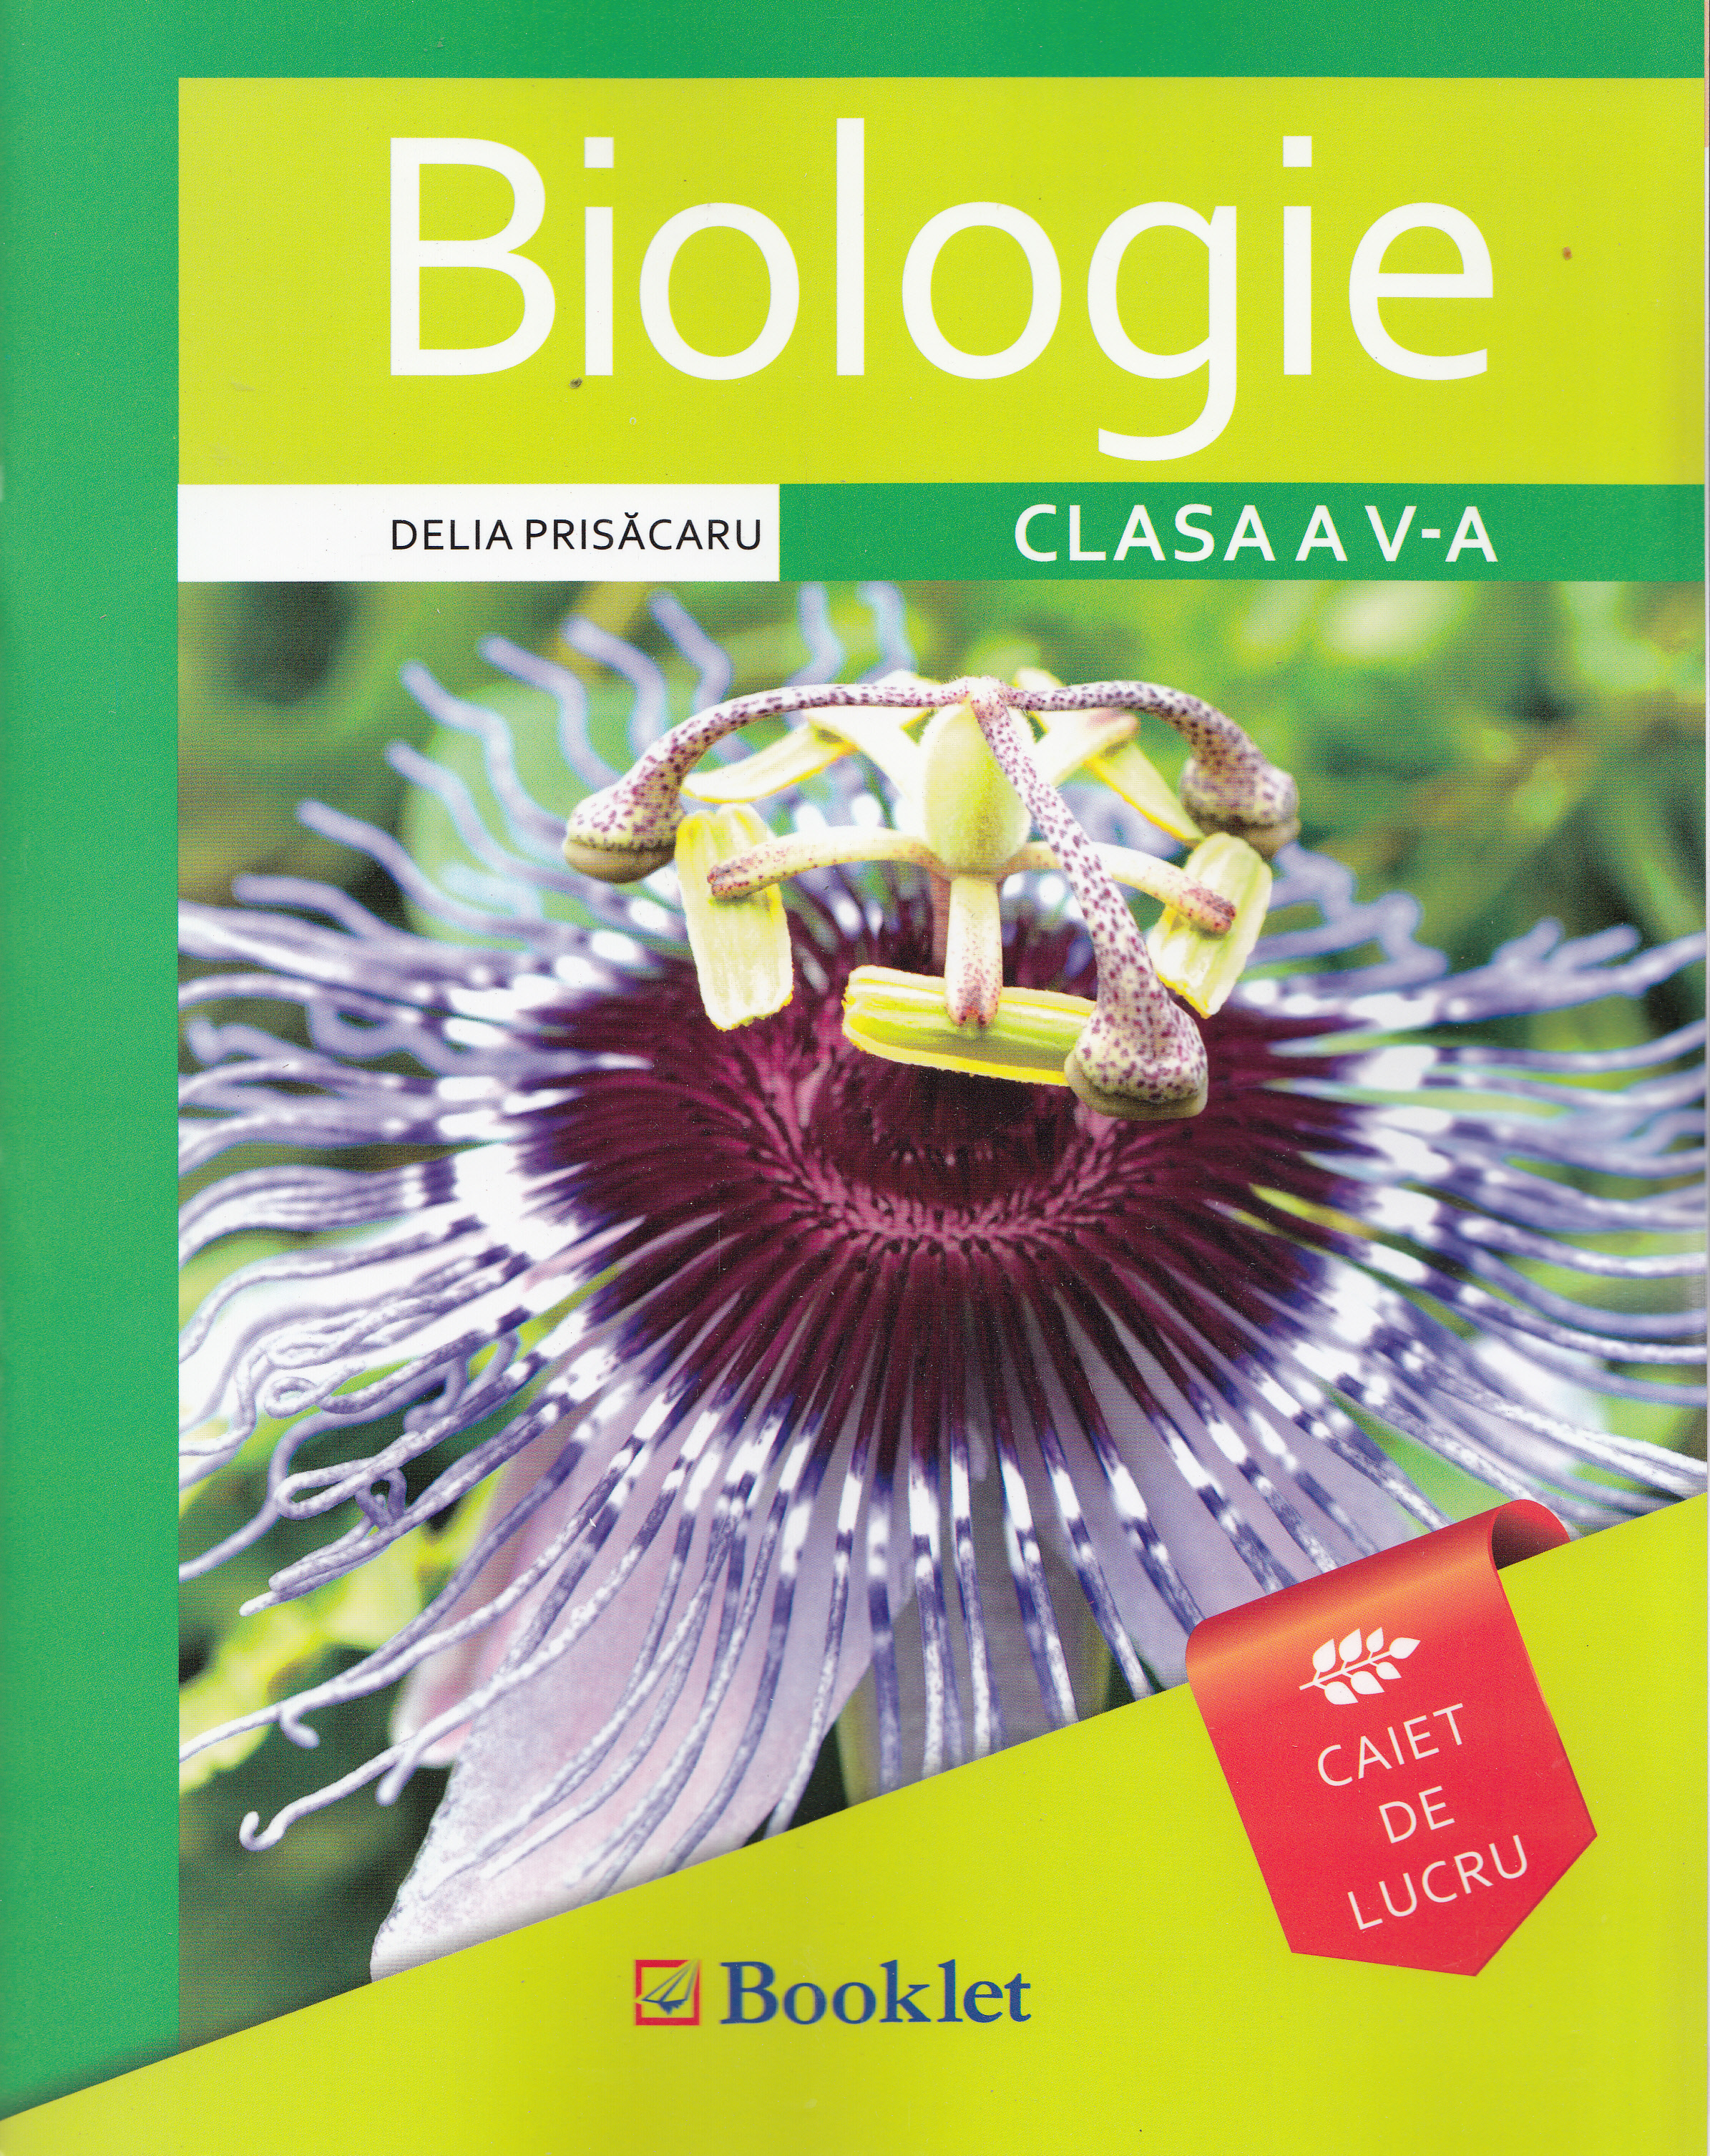 Biologie - Clasa a 5-a - Caiet de lucru - Delia Prisacaru